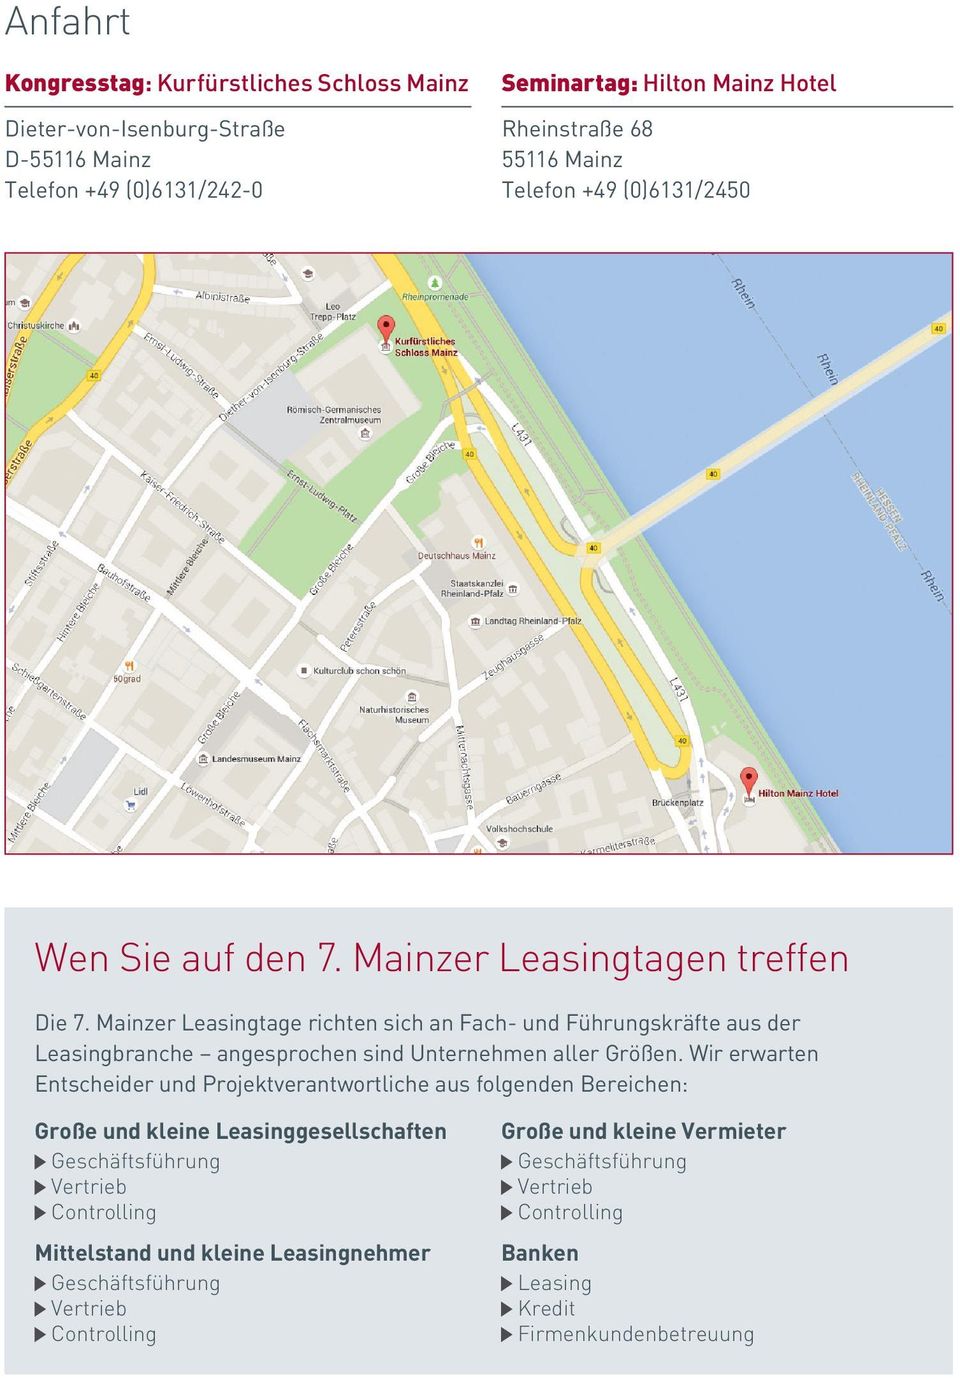 Mainzer Leasingtage richten sich an Fach- und Führungskräfte aus der Leasingbranche angesprochen sind Unternehmen aller Größen.